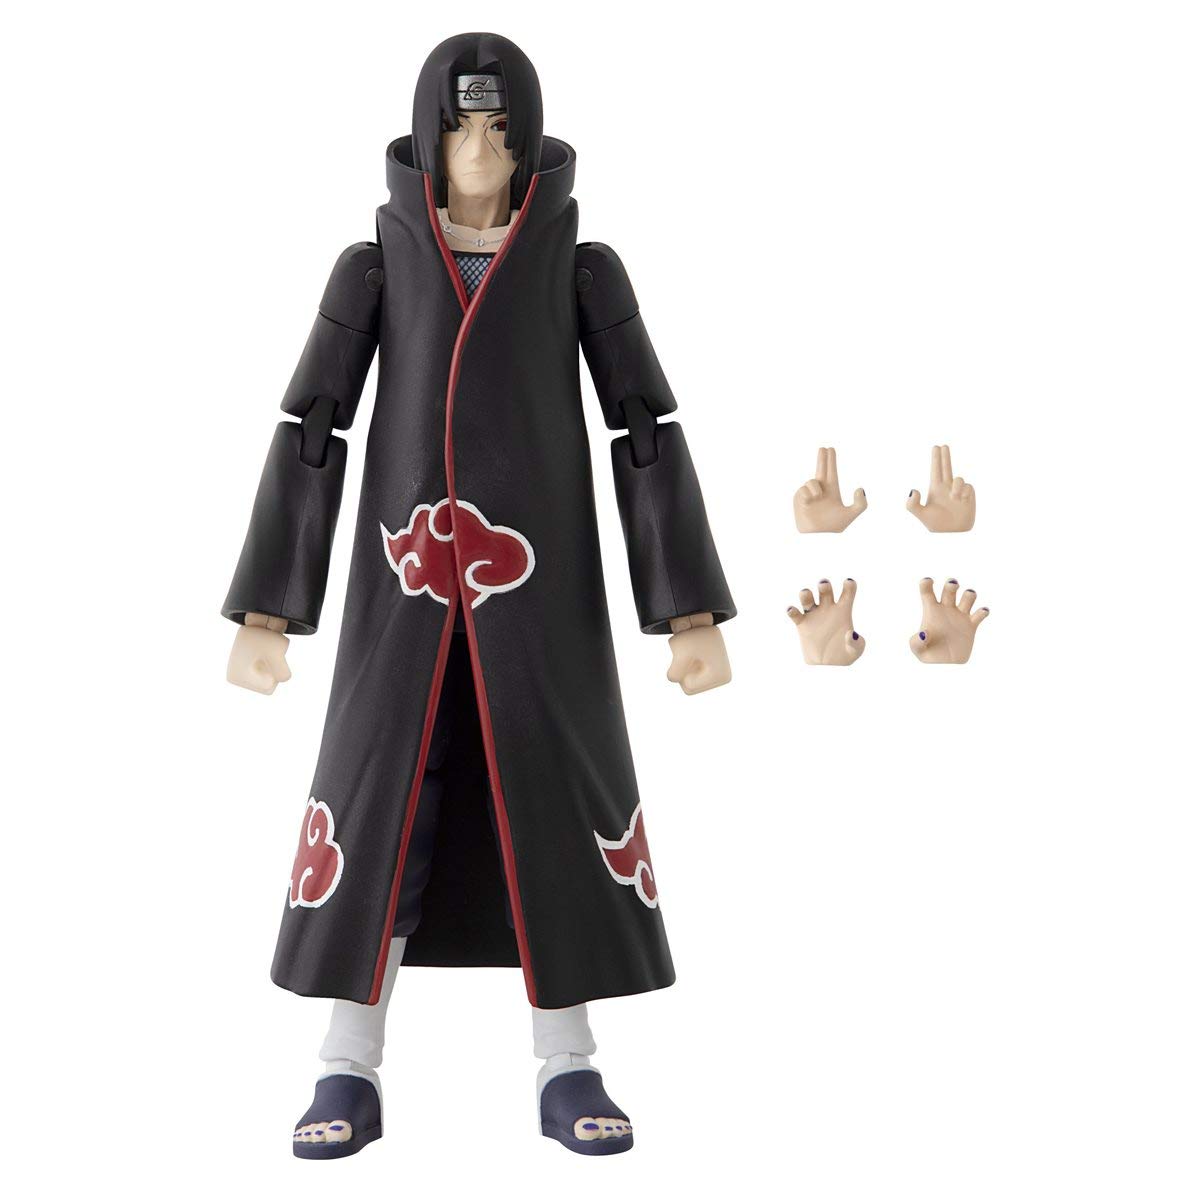 18cm 6pcs/set Naruto Shippuden Anime Action Figures Uzumaki Naruto Sasuke  Kakashi Pvc Model Collectible Toys Gifts For Kids - Action Figures -  AliExpress